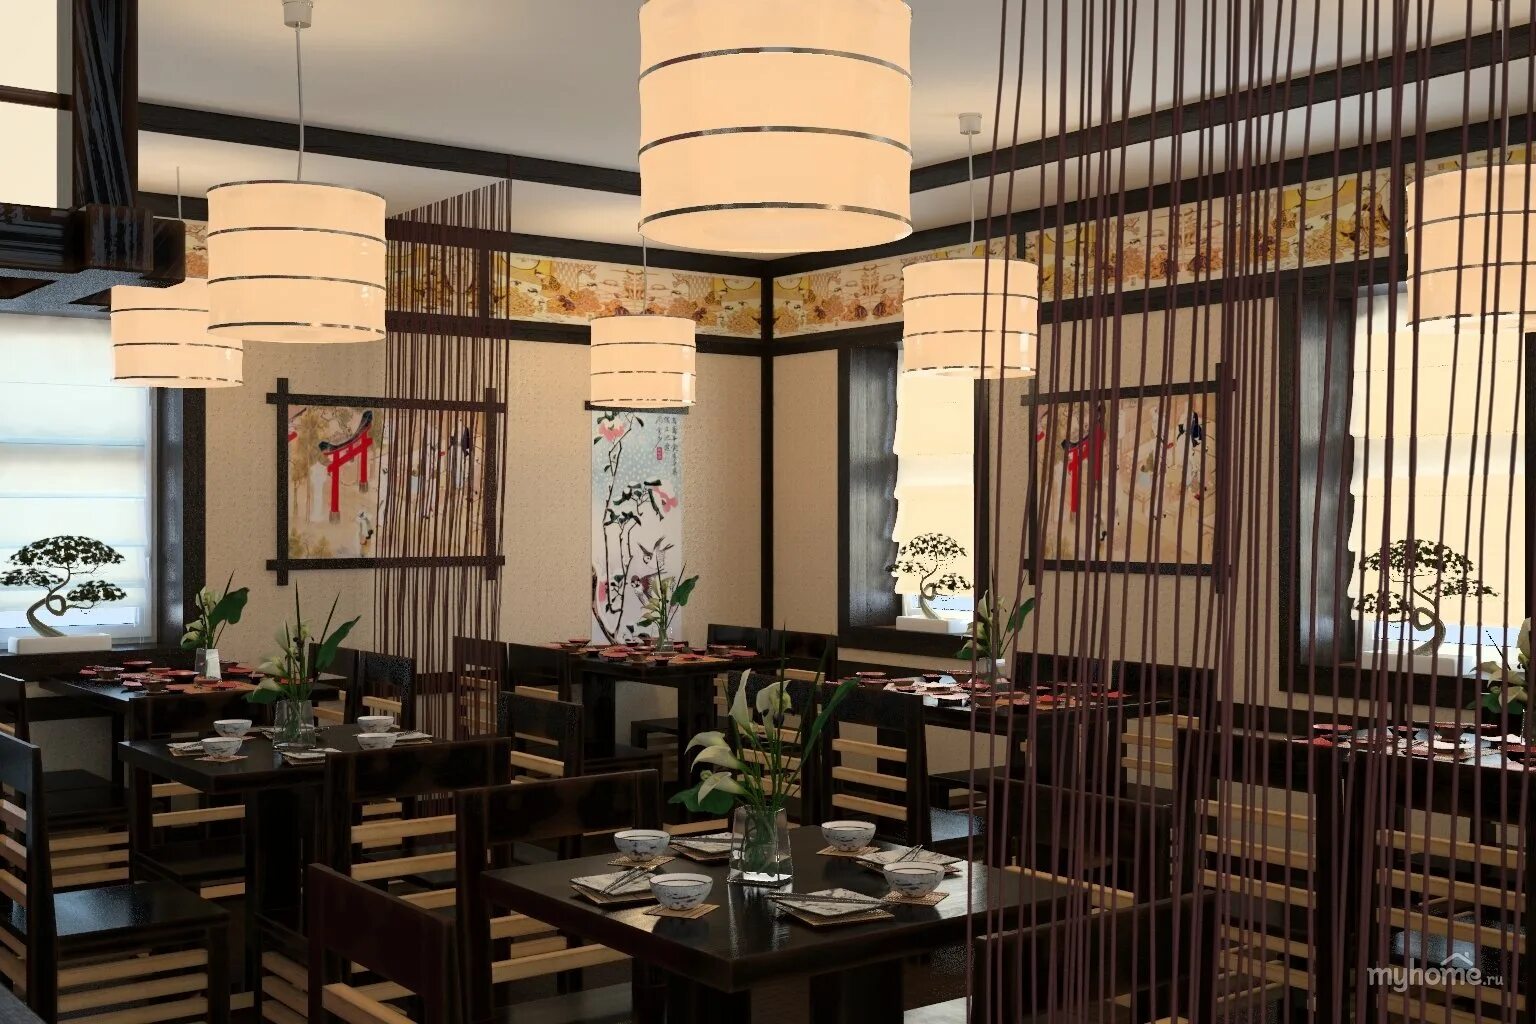 Интерьер ресторана «Моондзун»Япония. Ресторан в японском стиле. Кафе в японском стиле. Японский стиль в интерьере.